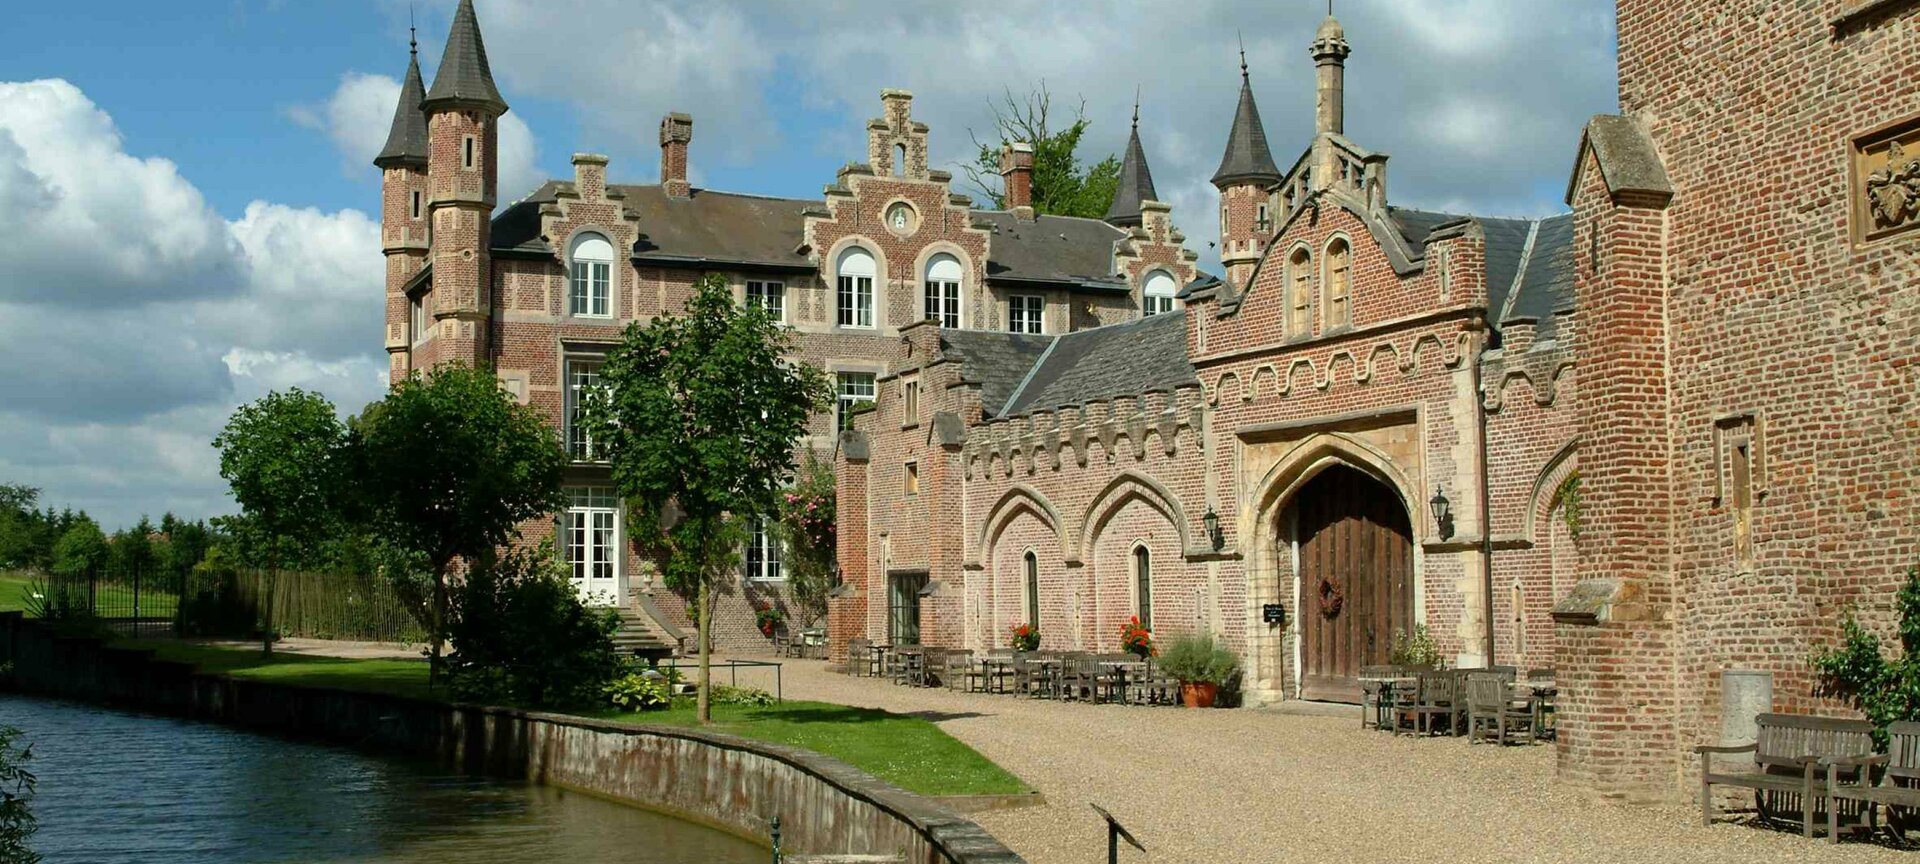 Château de la Motte - Chateau de la Motte